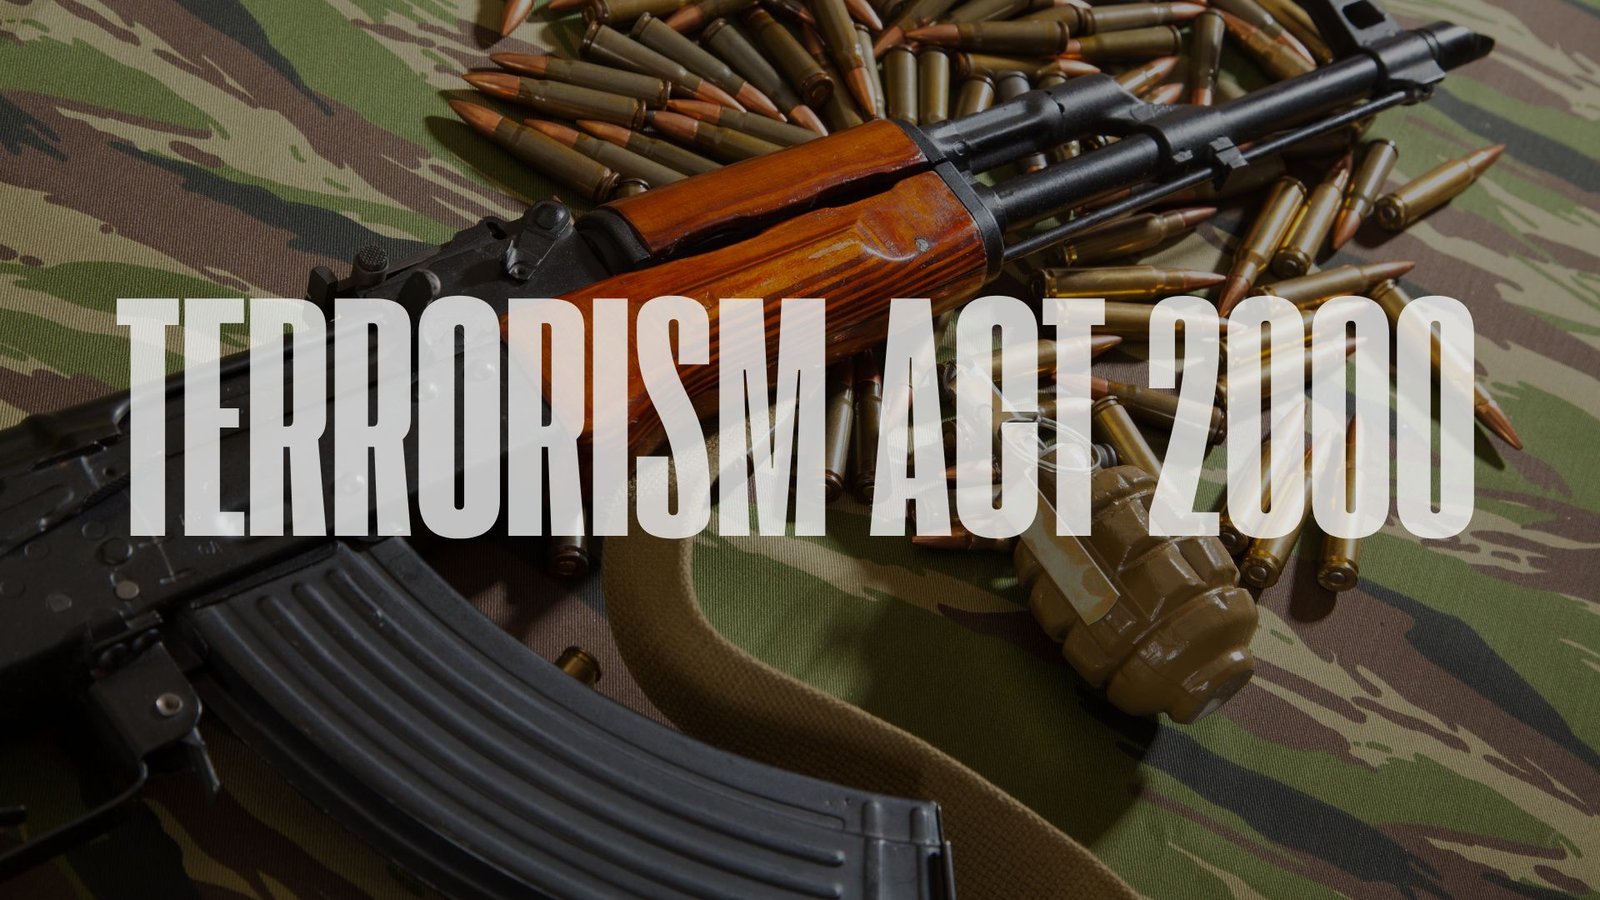 Terrorism Act 2000, Lawforeverything